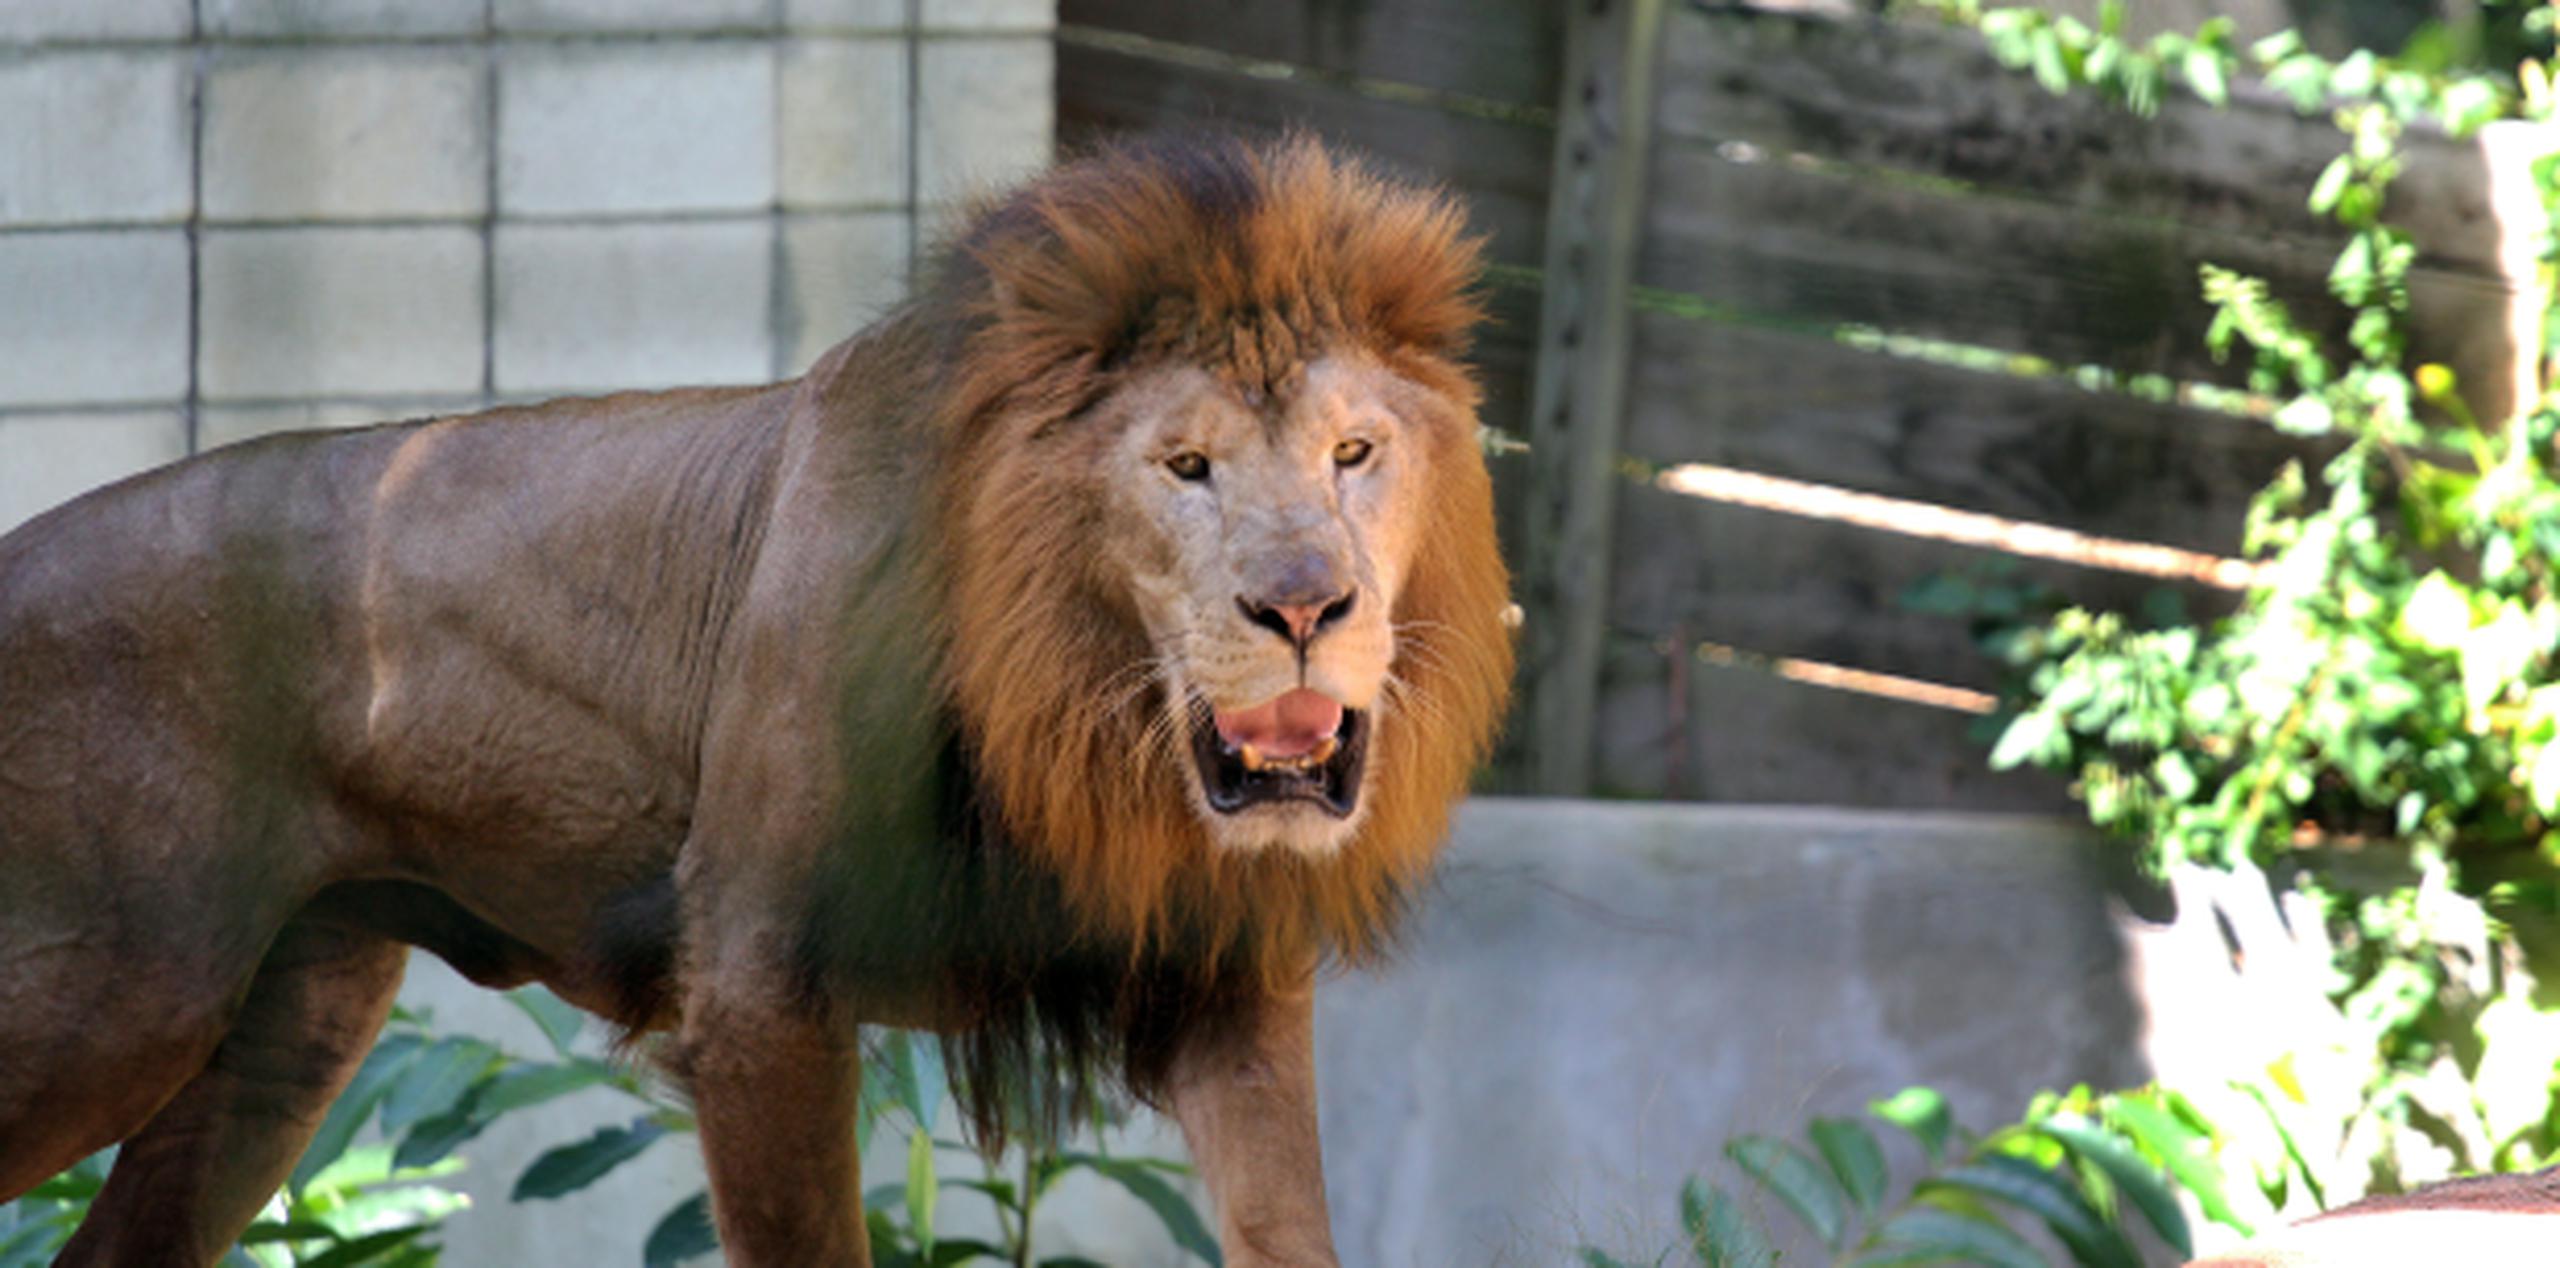 Denuncias hechas por activistas propiciaron una pesquisa sobre las operaciones del zoológico, que está plagada de irregularidades. (Archivo)